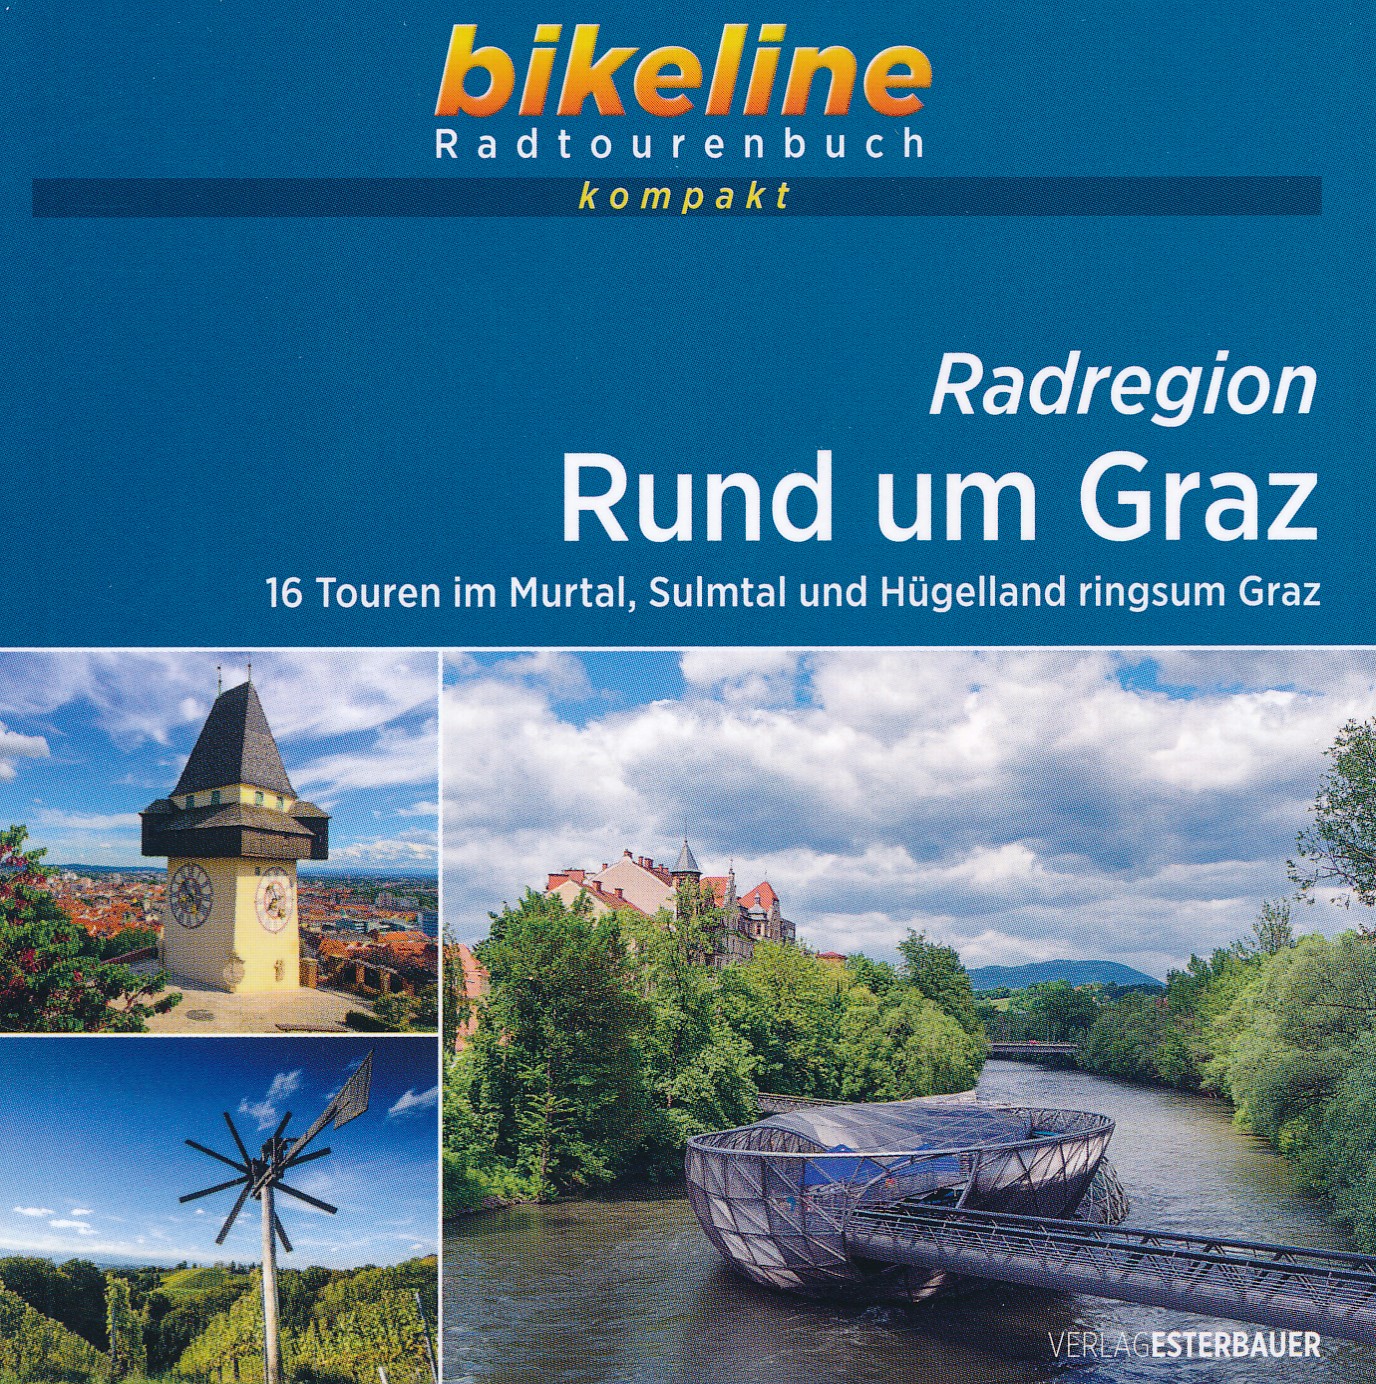 Online bestellen: Fietsgids Bikeline Radtourenbuch kompakt Radregion Rund um Graz | Esterbauer